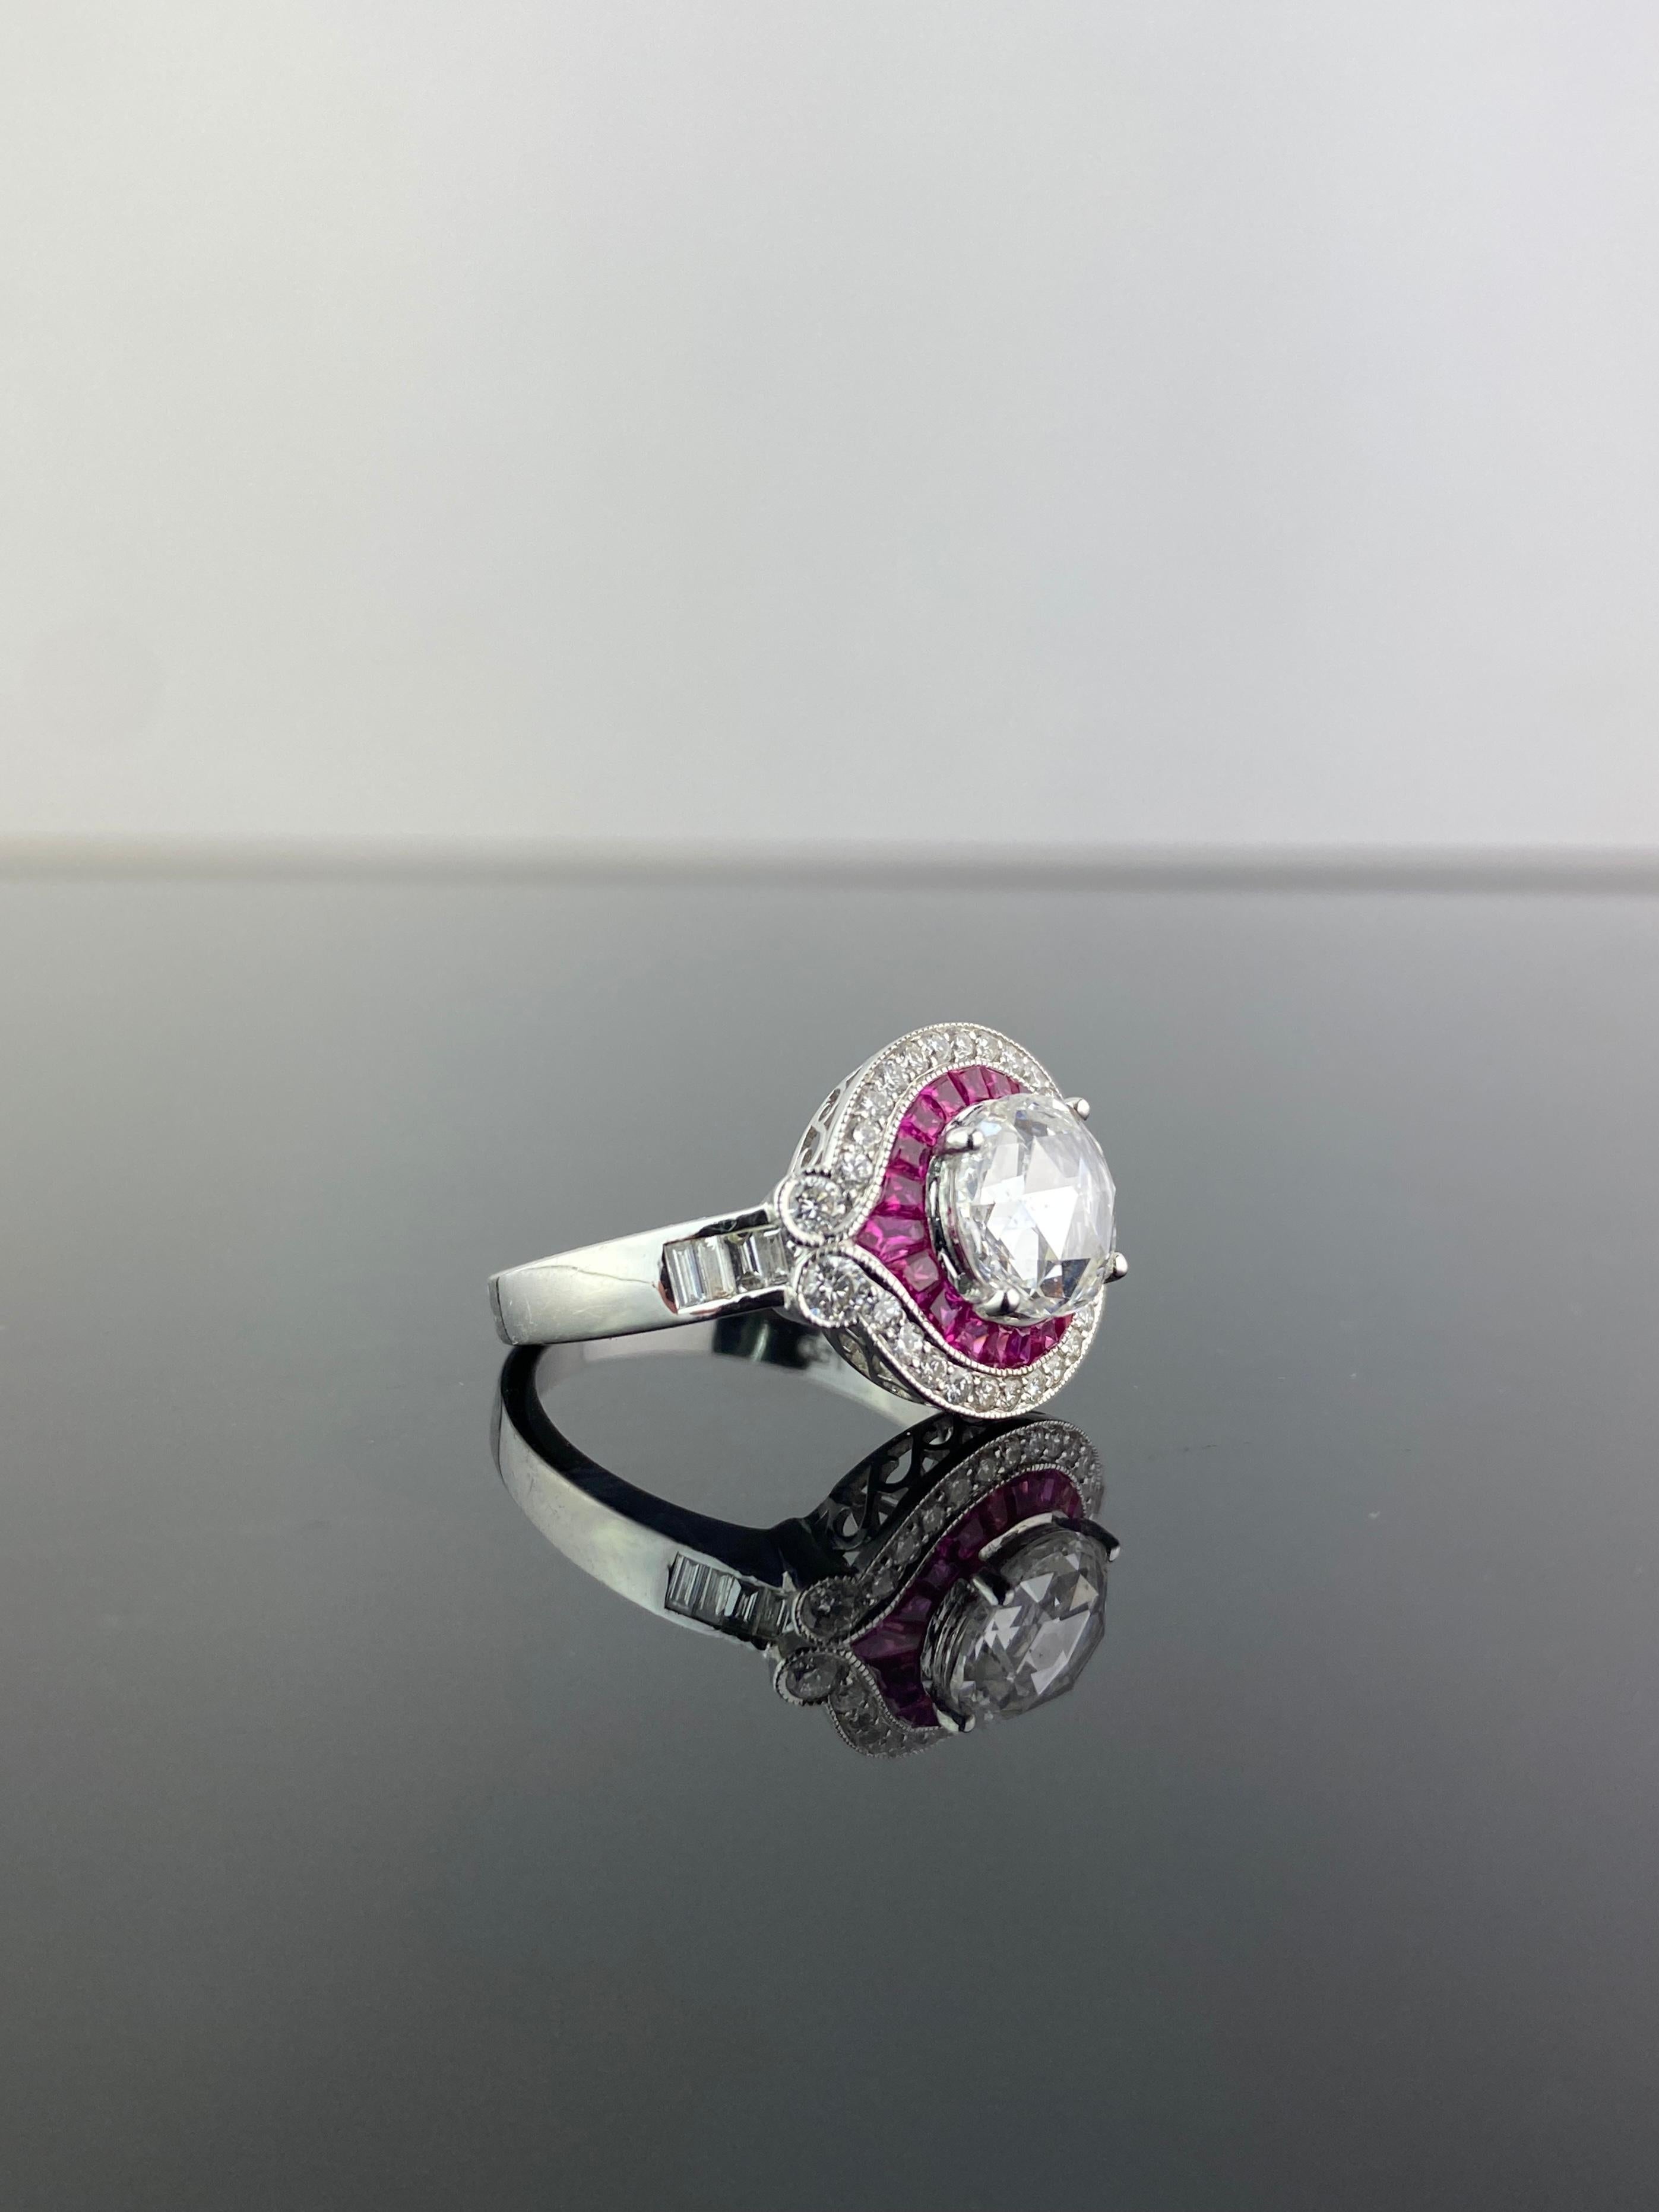 Bague de fiançailles solitaire en diamant et rubis de 1,32 carat, de style art-déco. Les rubis sont taillés avec précision pour s'adapter à la monture, ce qui lui confère un aspect général impeccable. Au total, 0,48 diamant blanc et 0,75 carat de